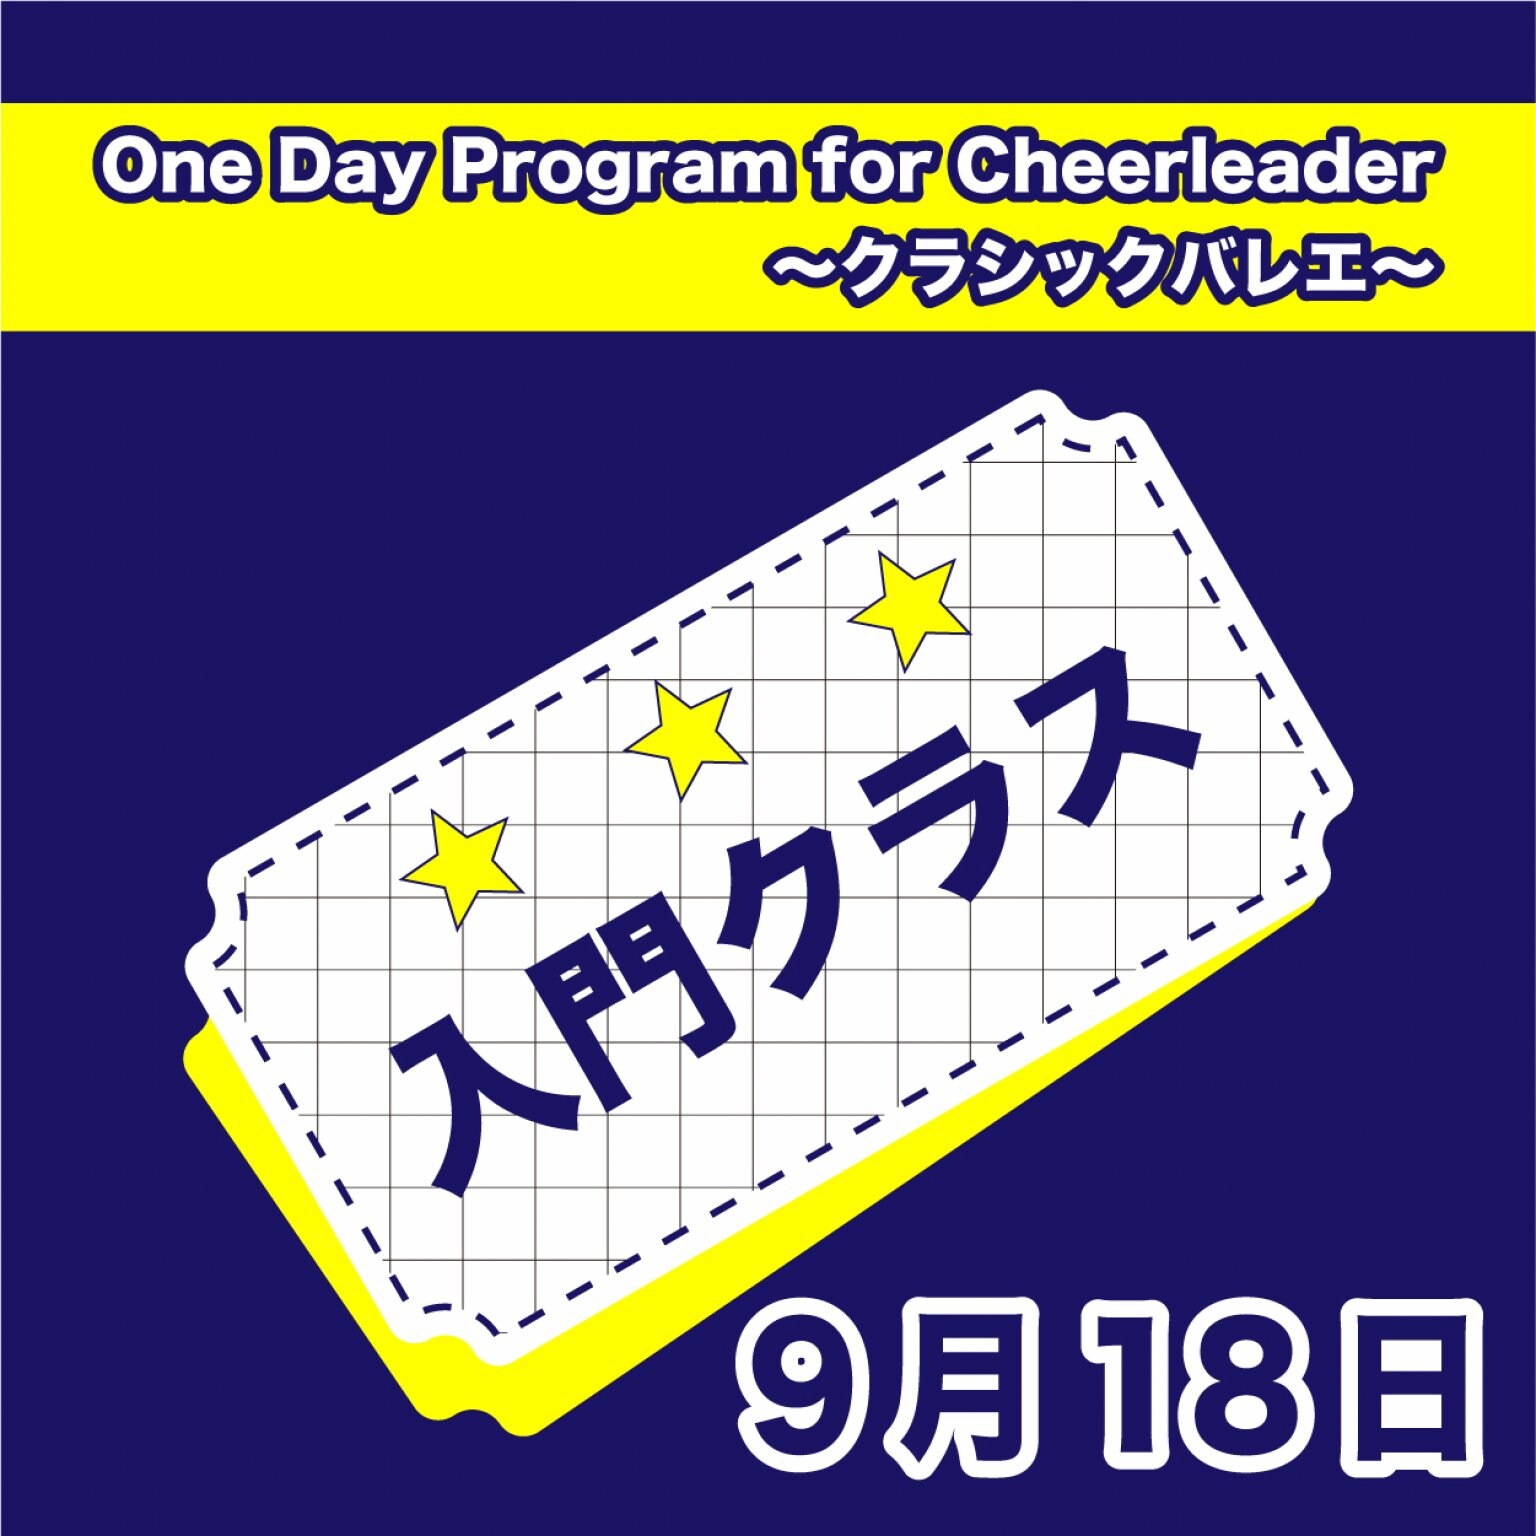 【入門】9月18日チアリーダーのためのワンデーバレエクリニック